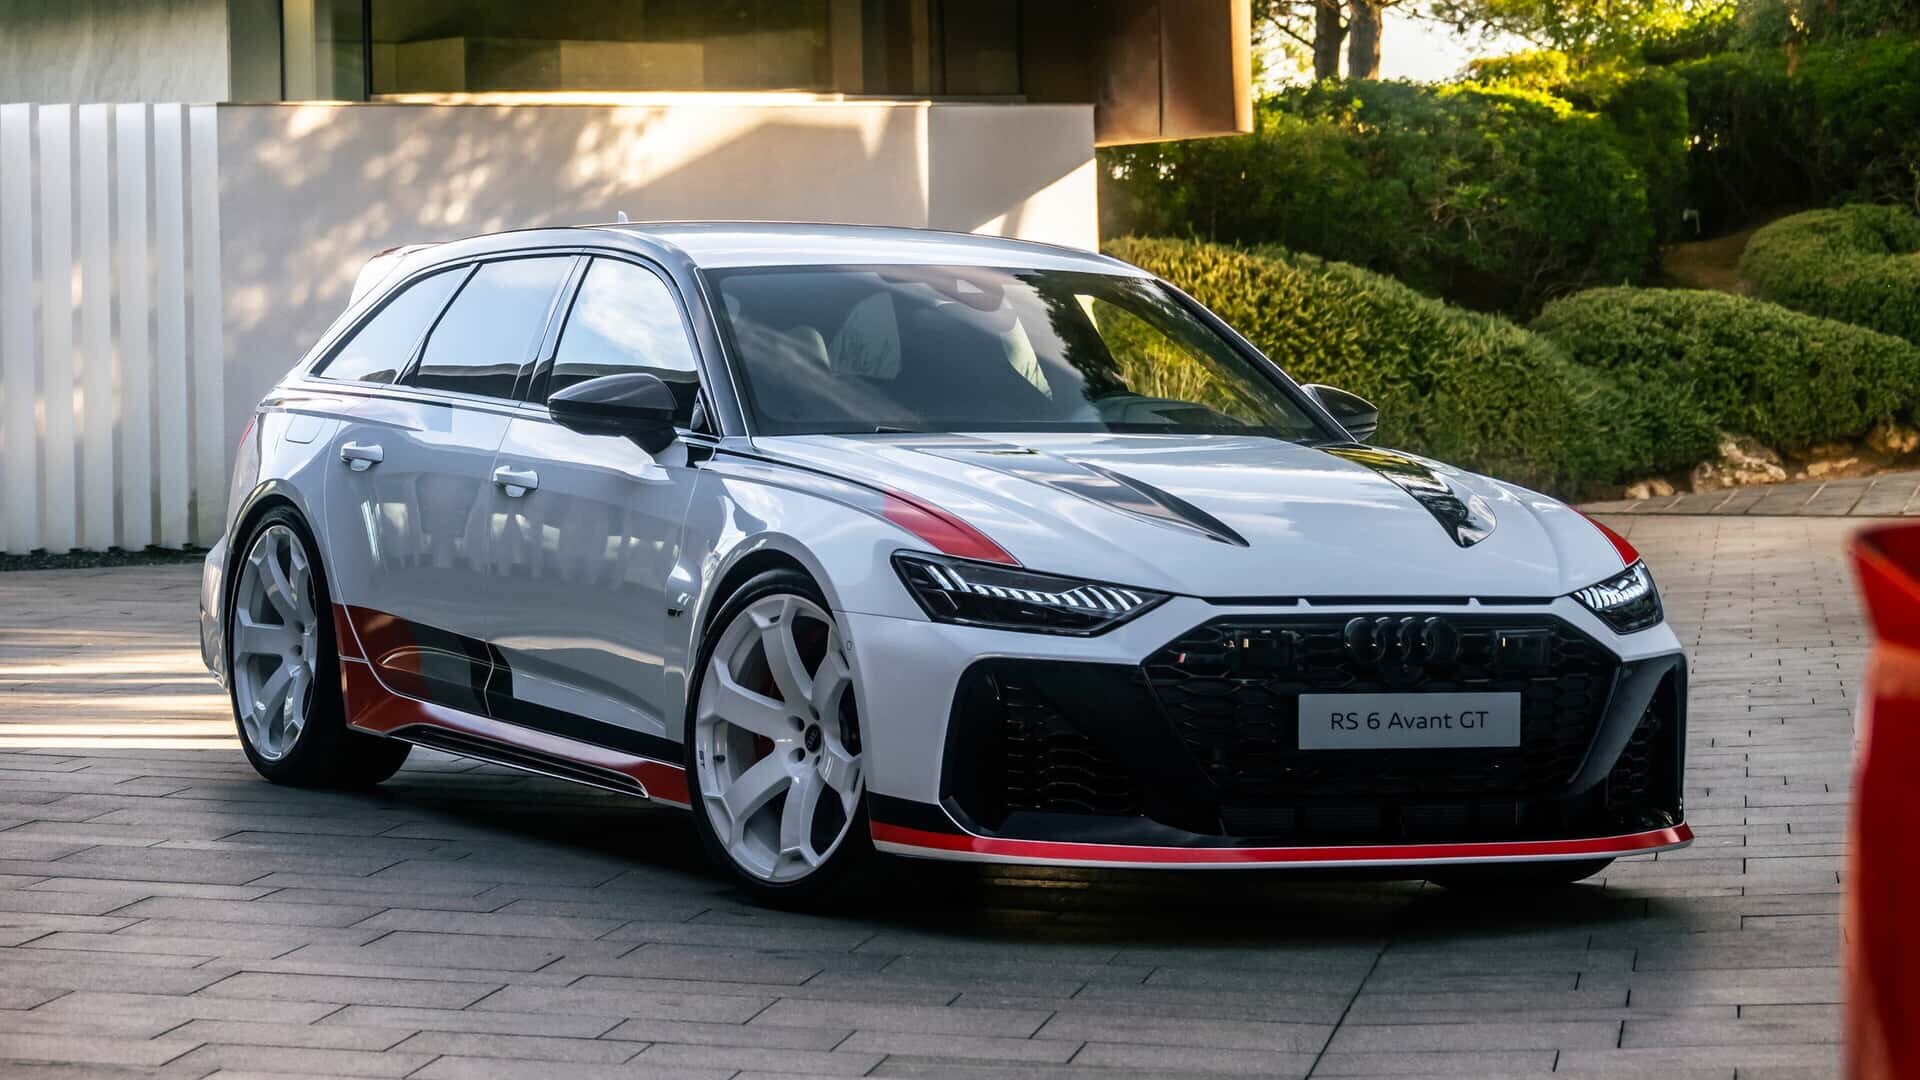 Audi postavilo nejrychlejší kombi na světě